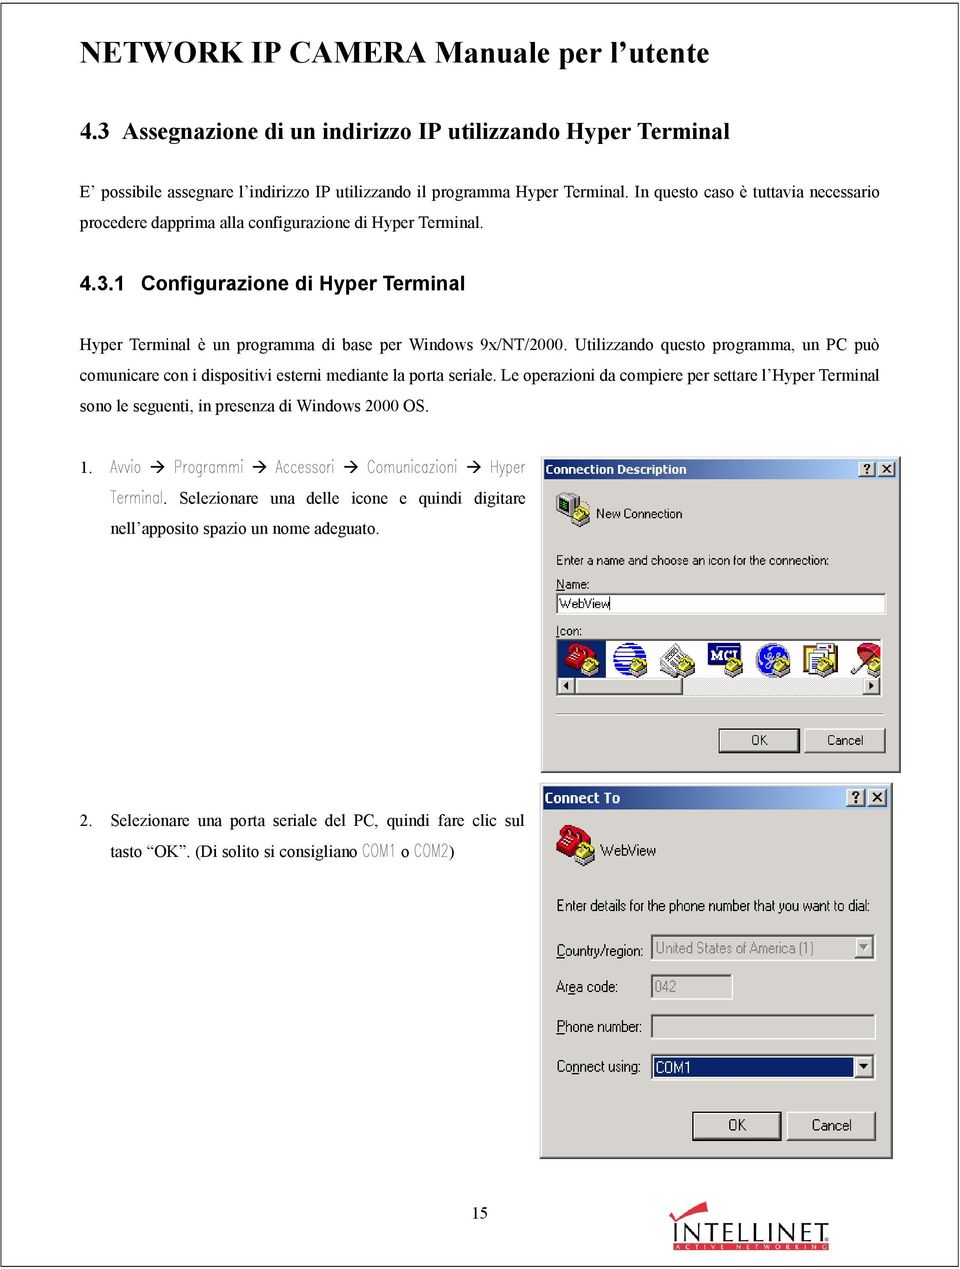 1 Configurazione di Hyper Terminal Hyper Terminal è un programma di base per Windows 9x/NT/2000.